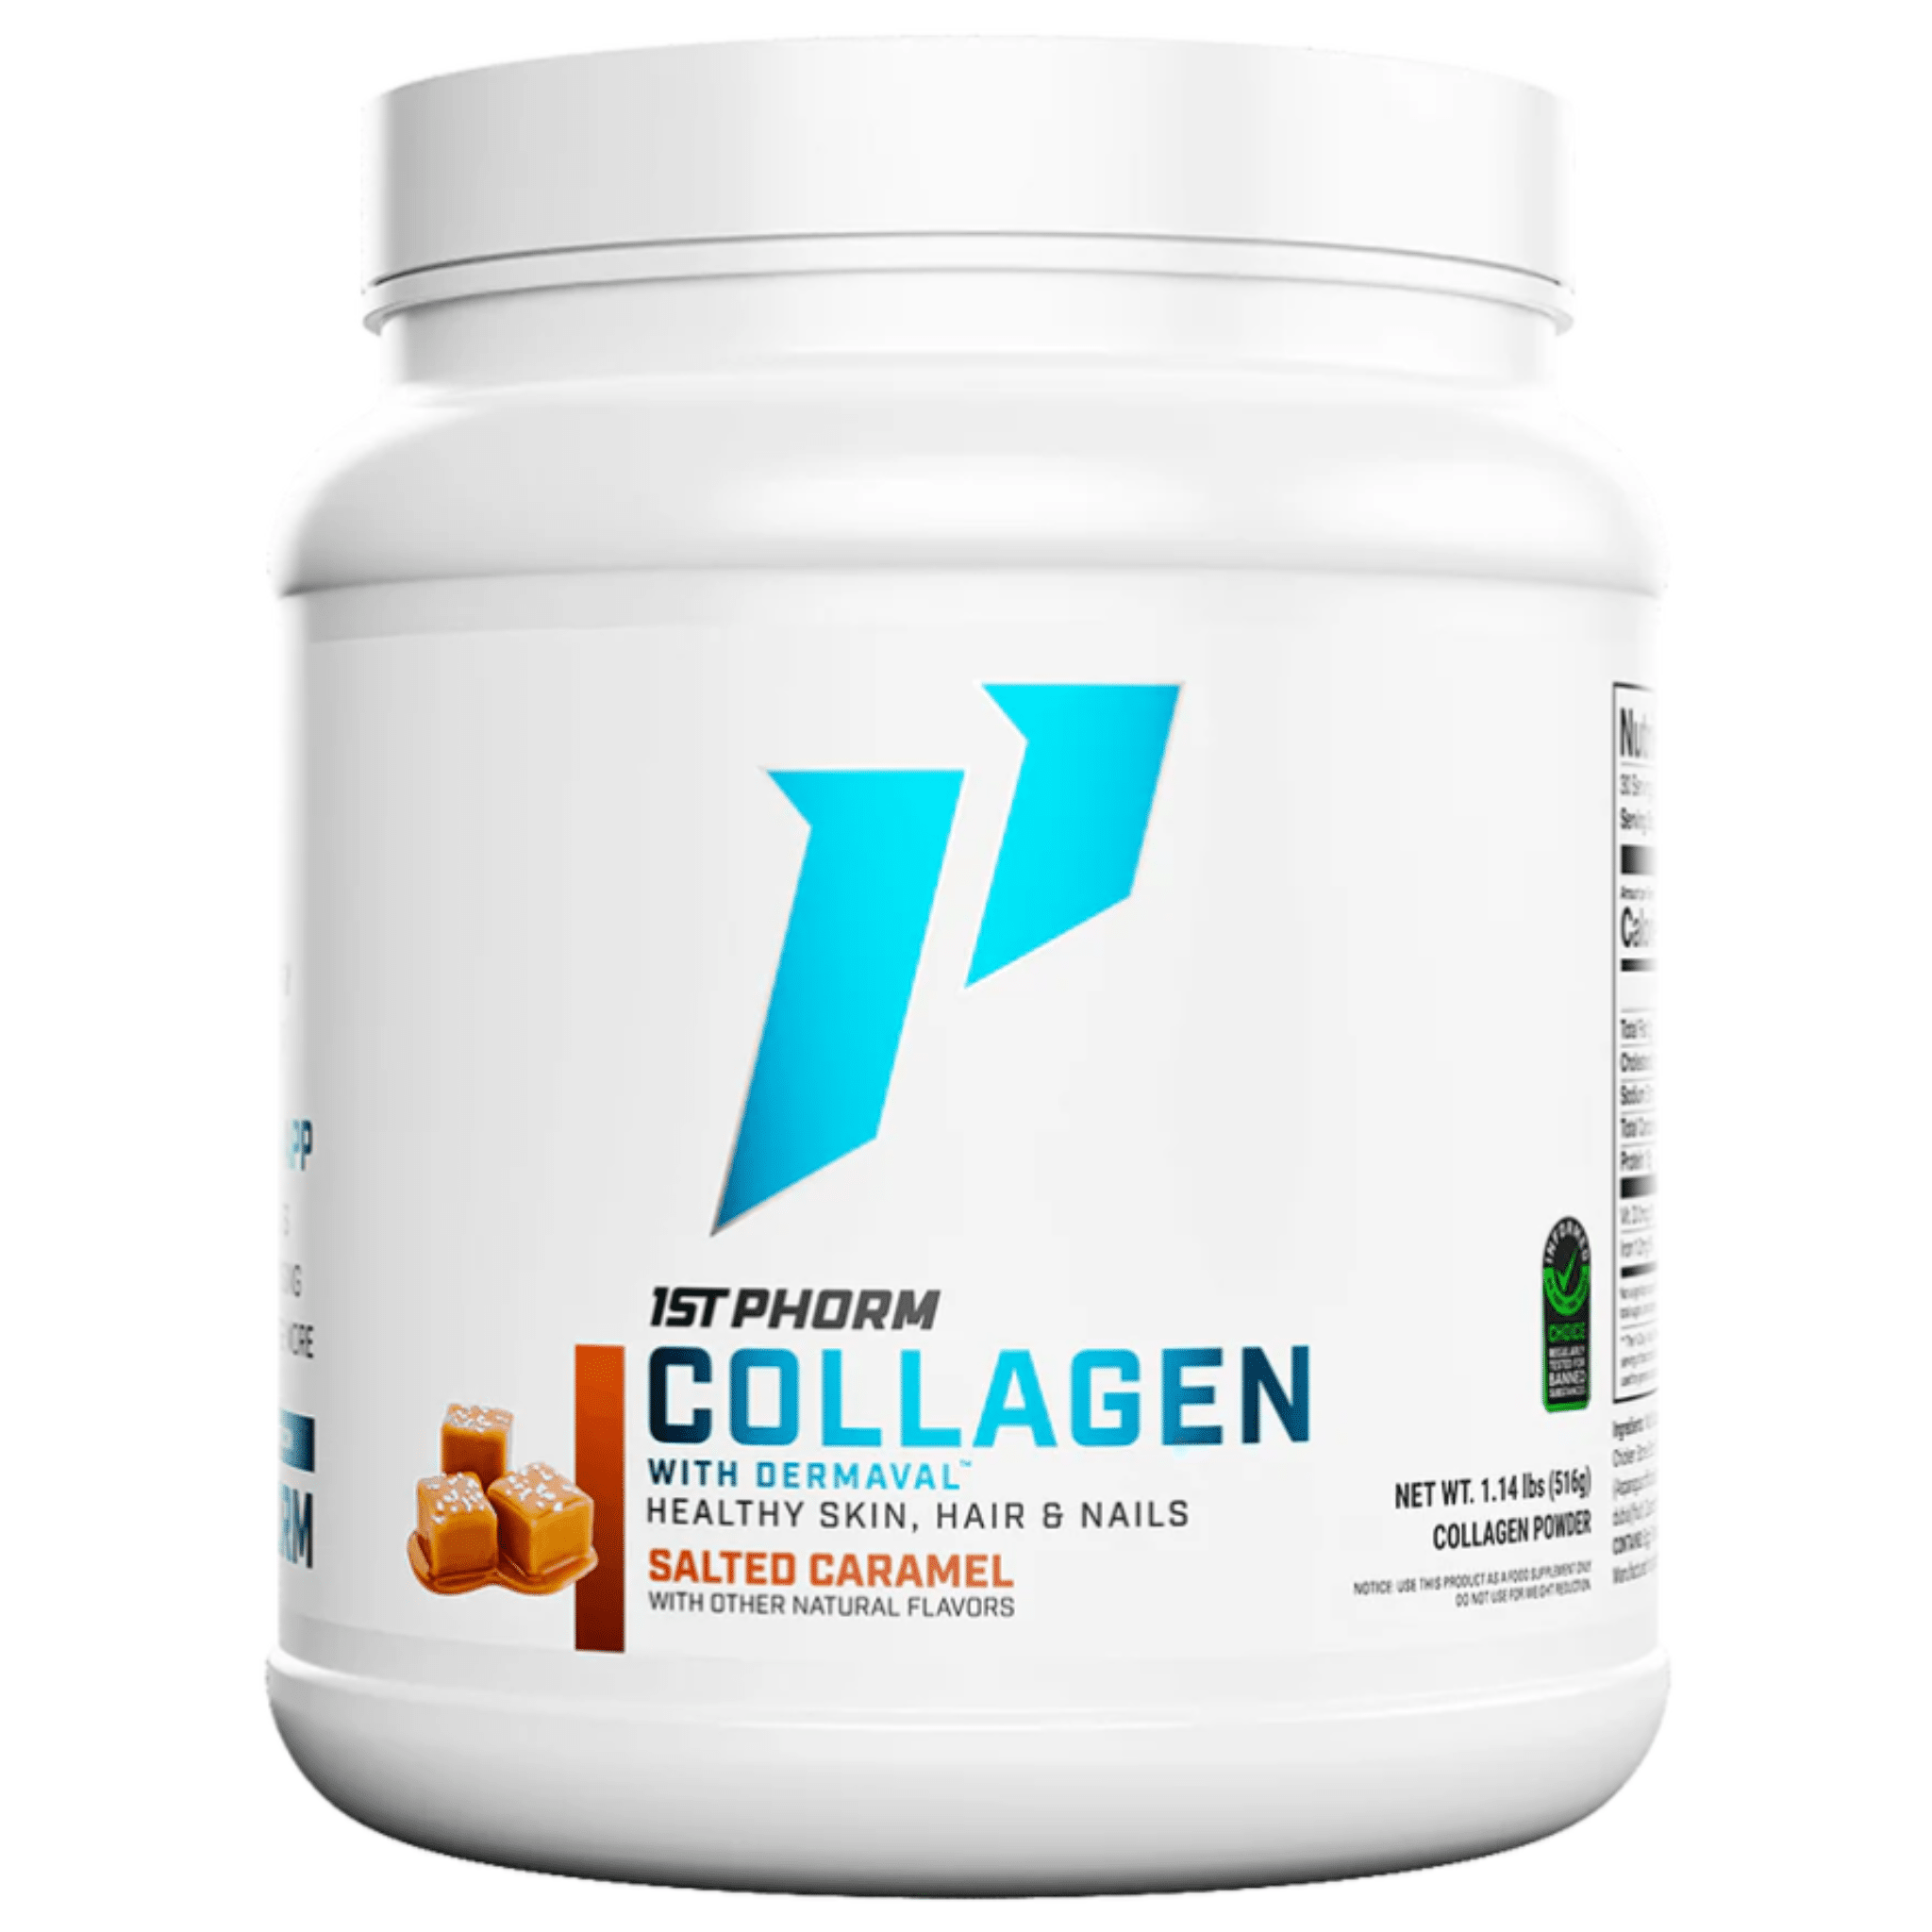 1st Phorm Collagen